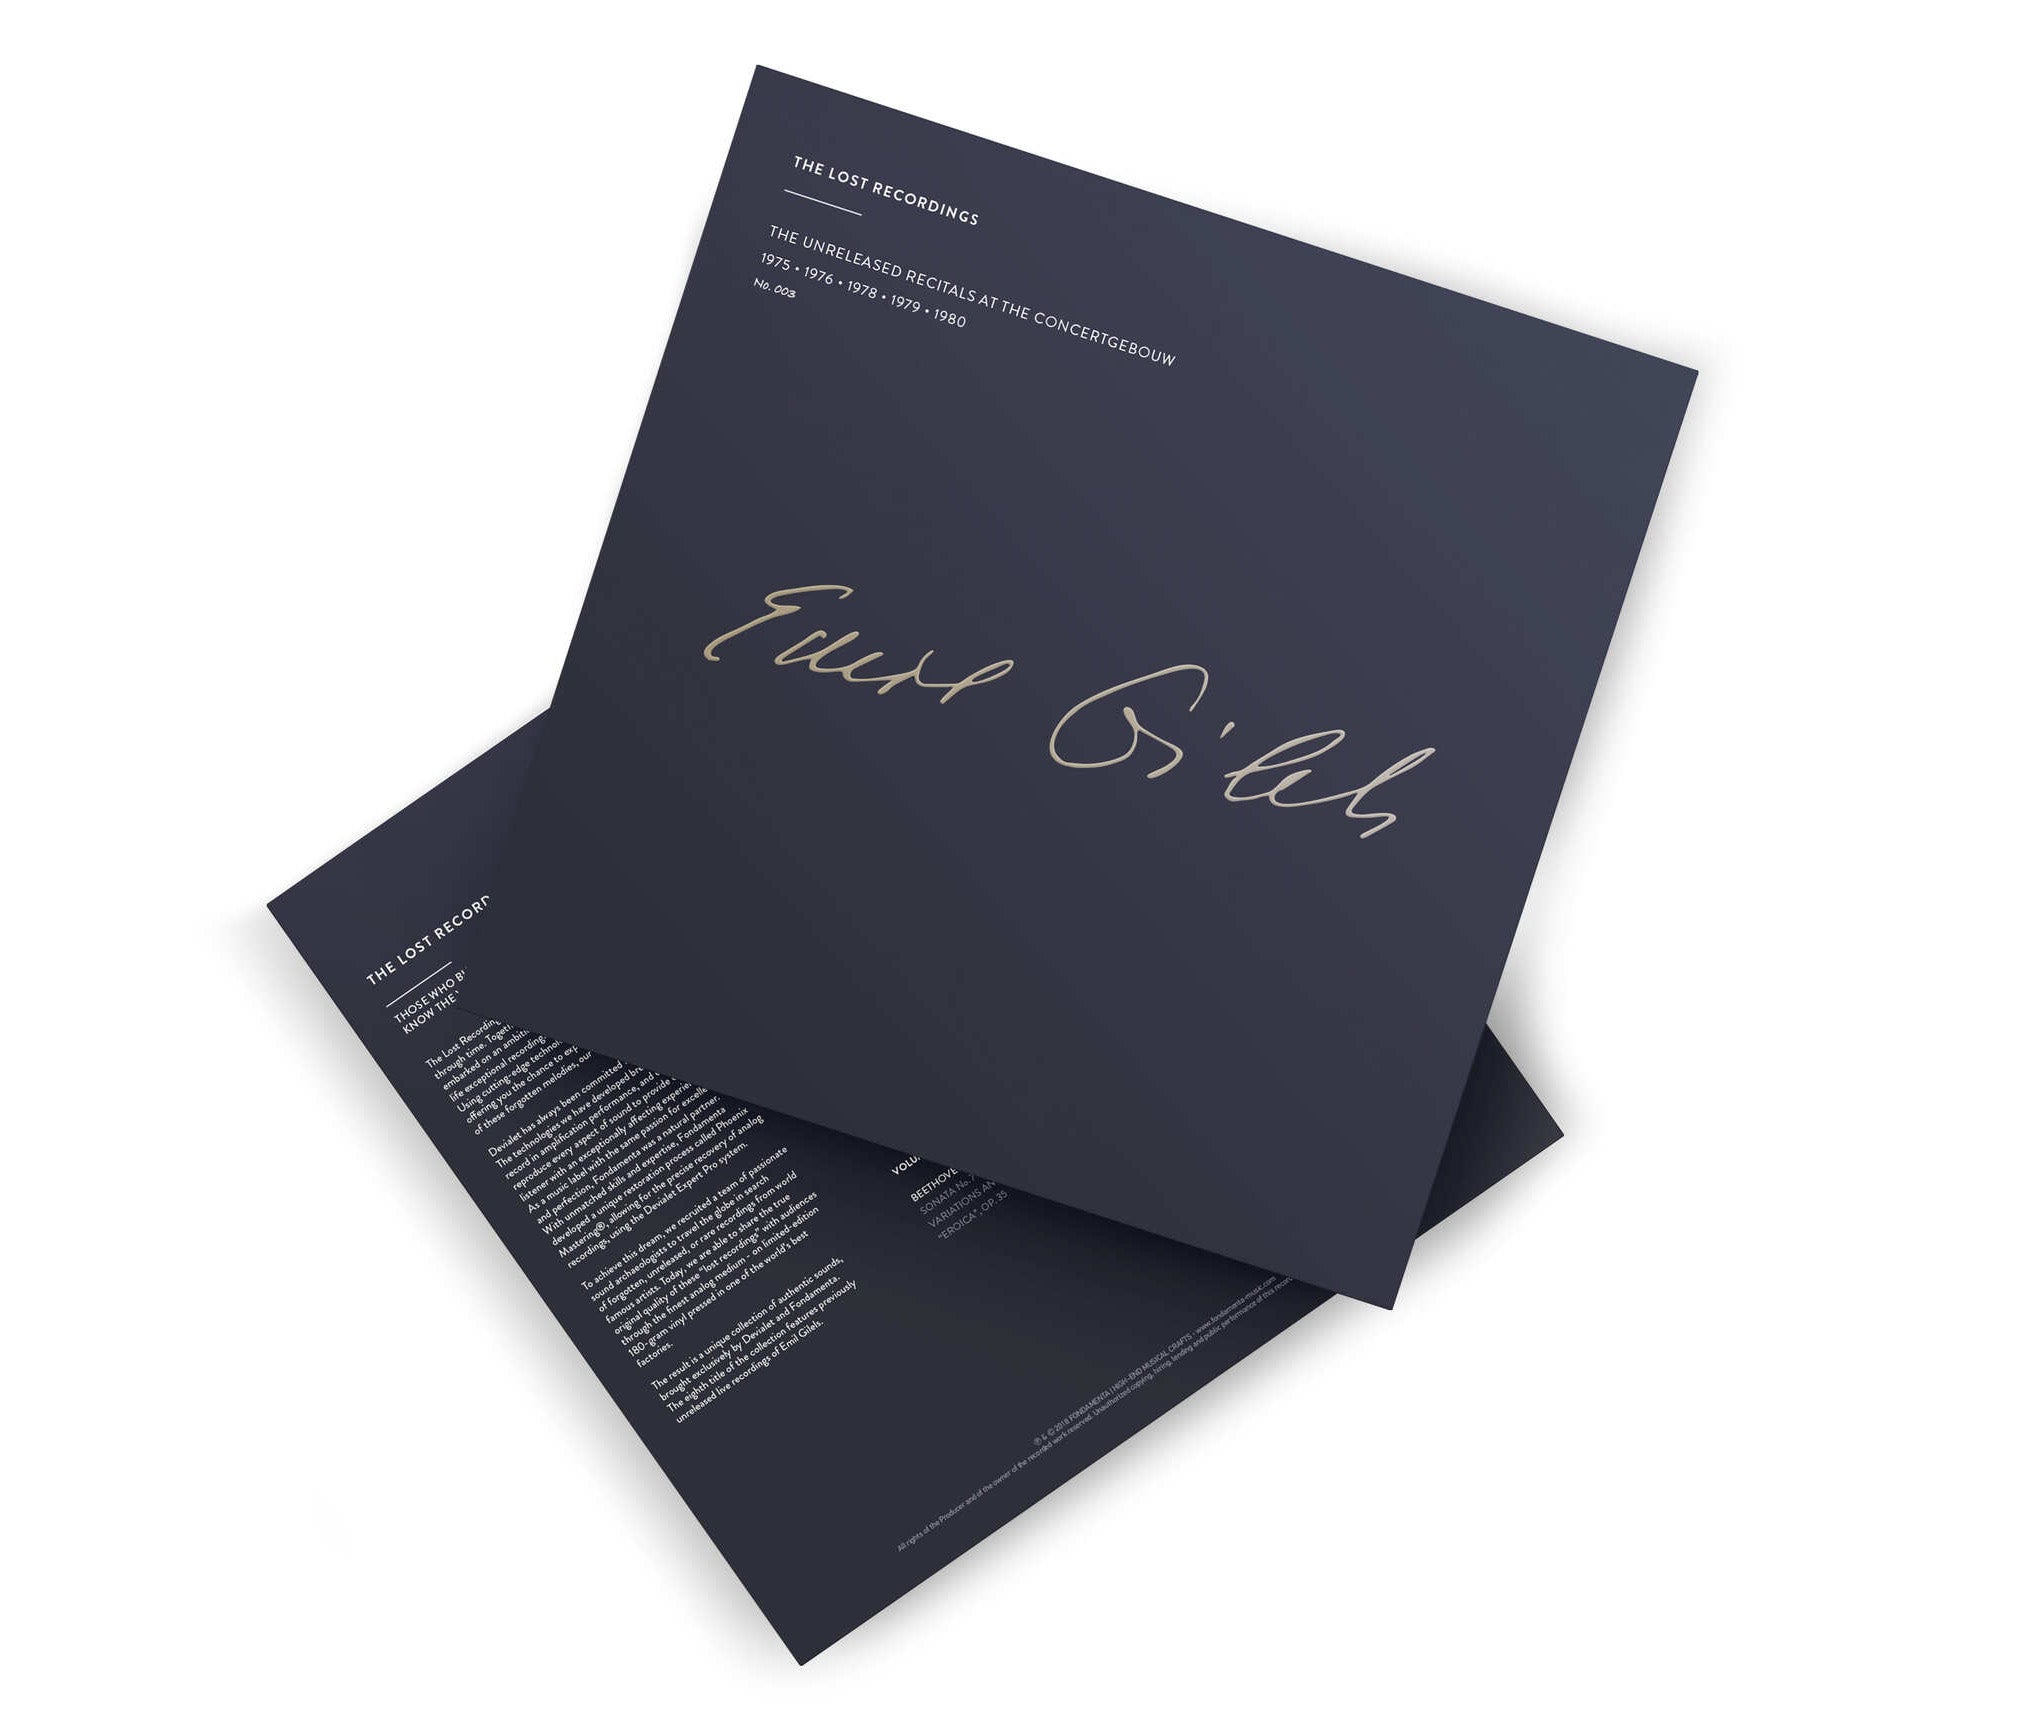 Emil Gilels - The Unreleased recitals at the Concertgebouw - 7 vinyl box set